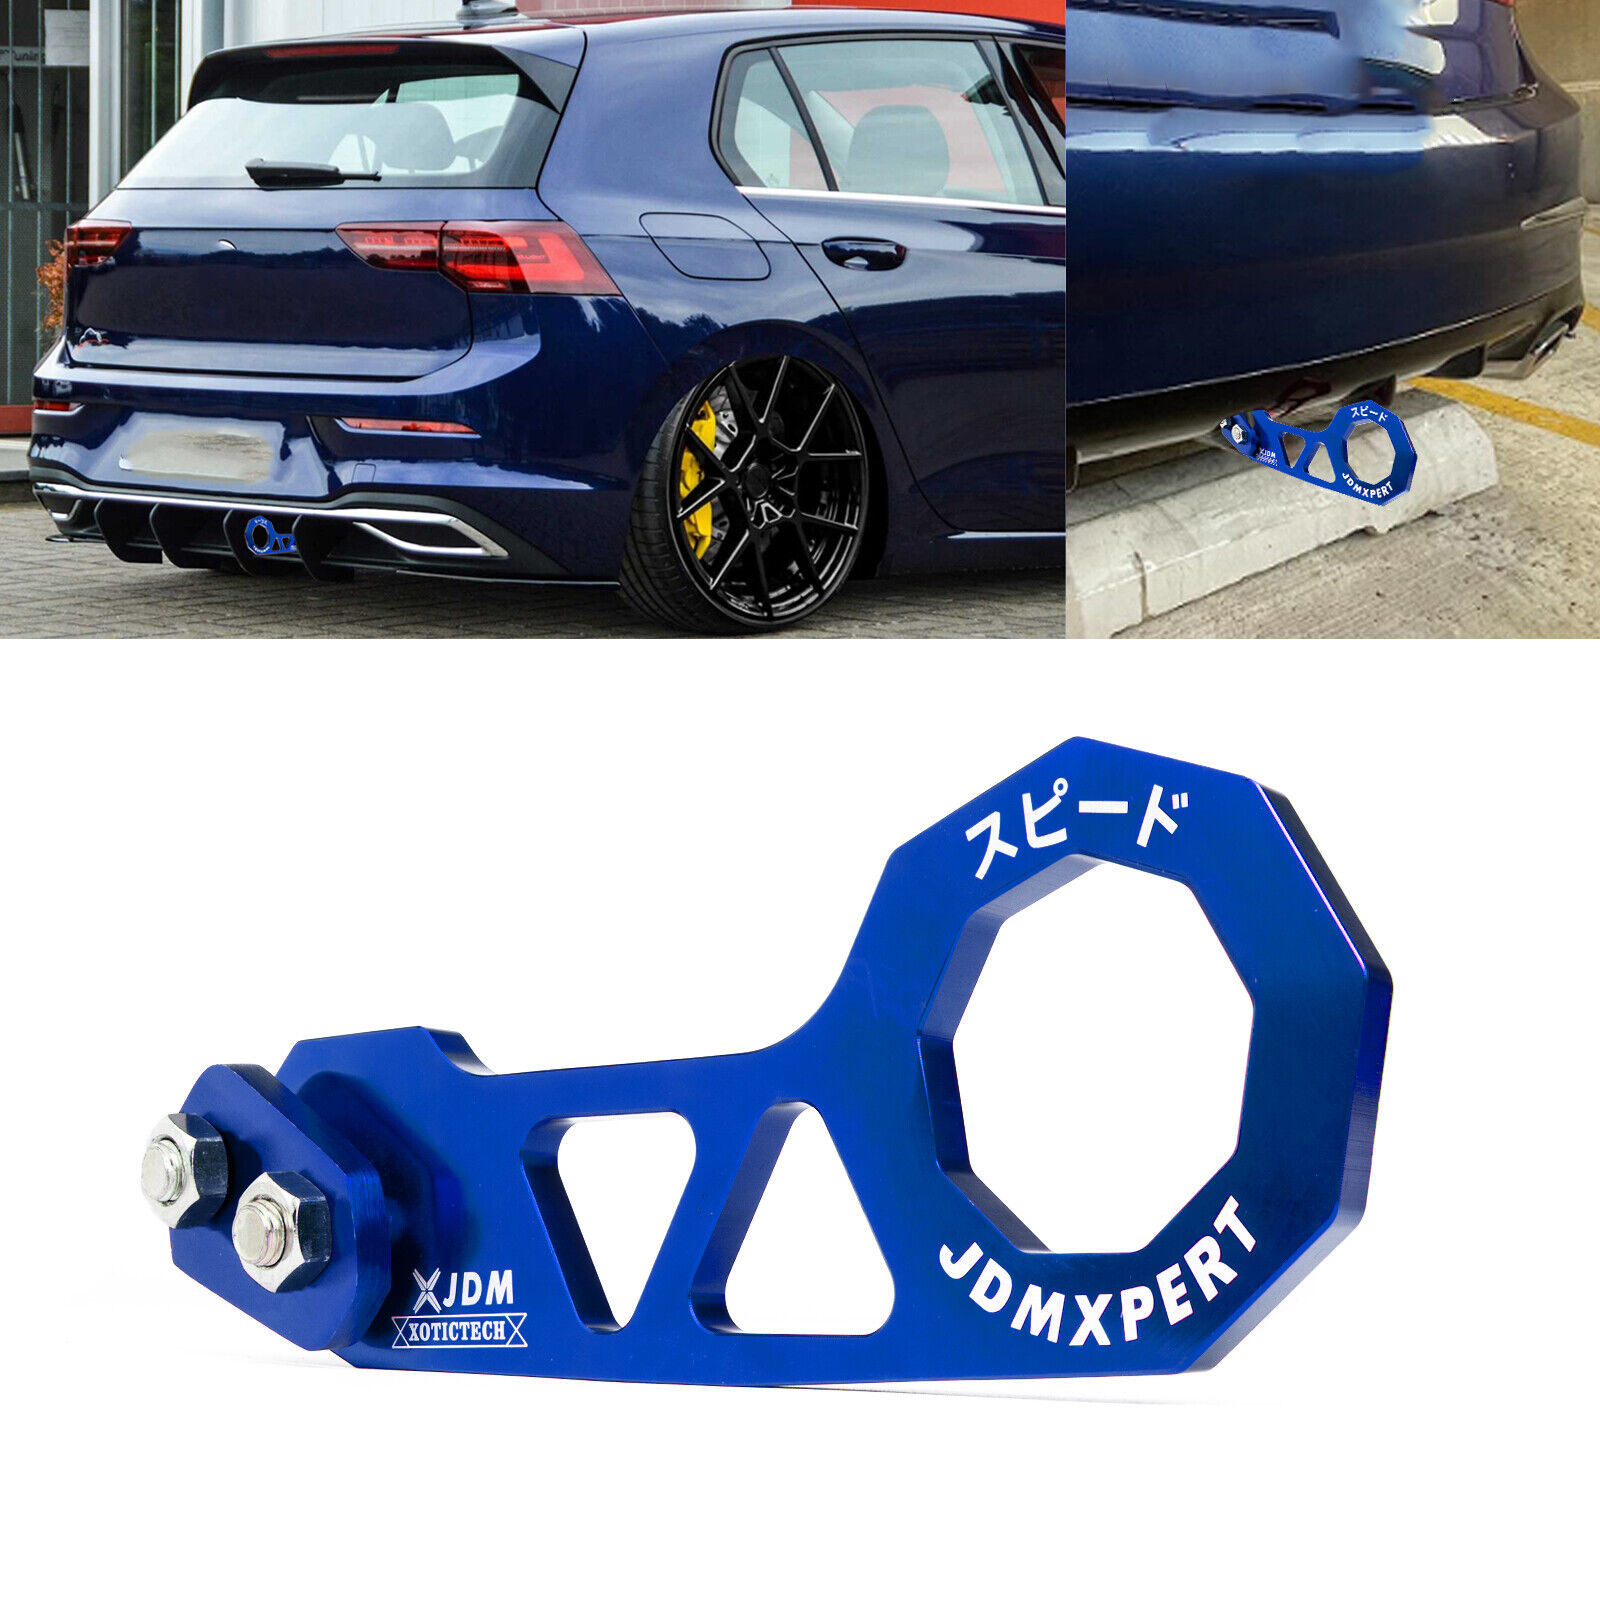 JDM Racing Style Aluminum Car Rear Tow Hook Kit For Honda Civic Acura Integra